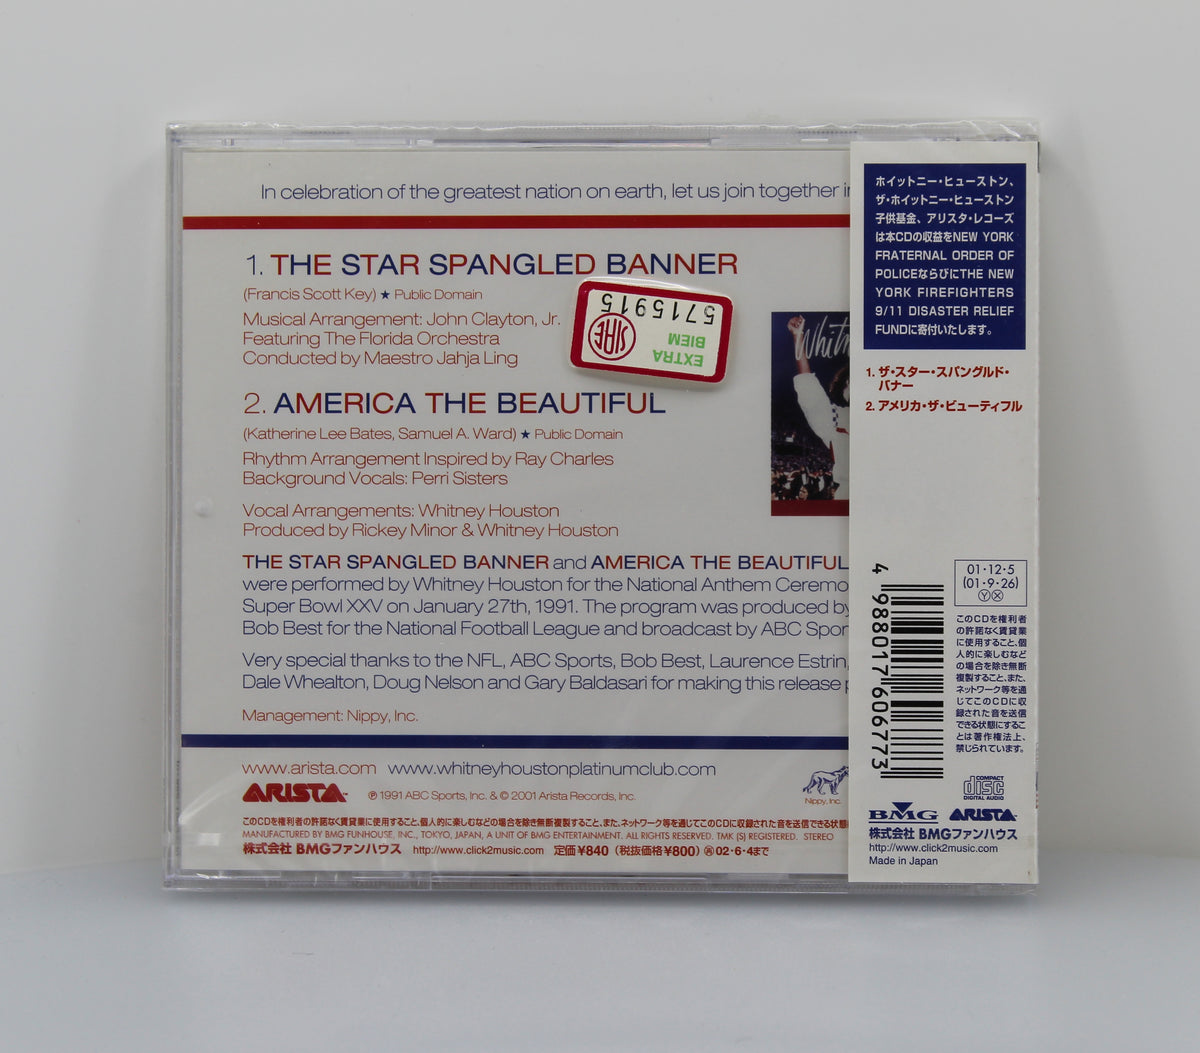 Whitney Houston – The Star Spangled Banner, CD Single, Japan 2001